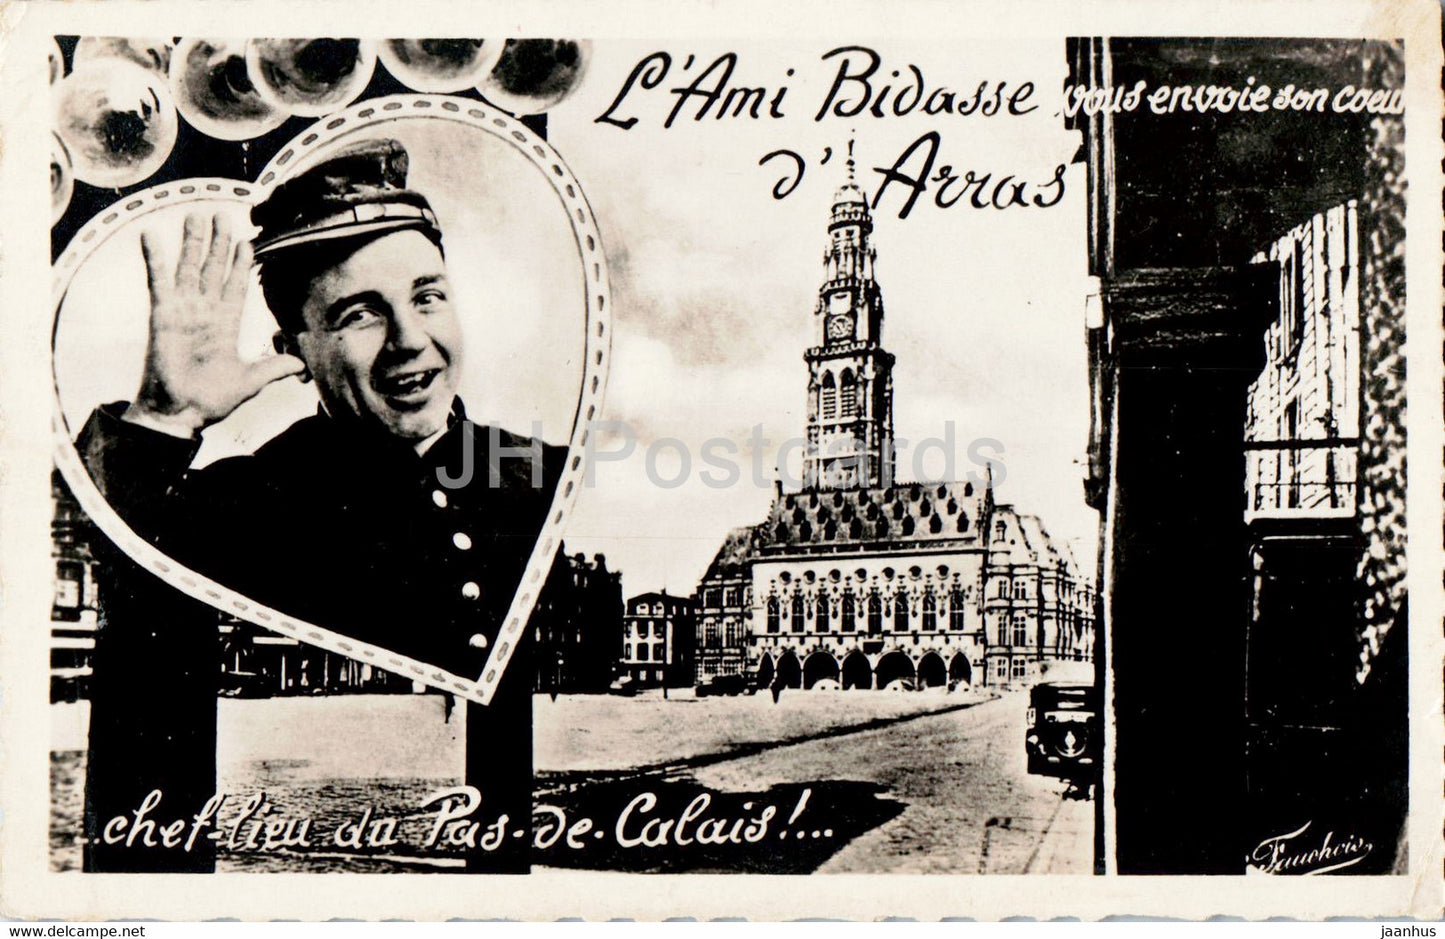 L'Ami Bidasse vous envoie son coeur d'Arras - chef lieu du Pas de Calais - old postcard - 1951 - France - used - JH Postcards